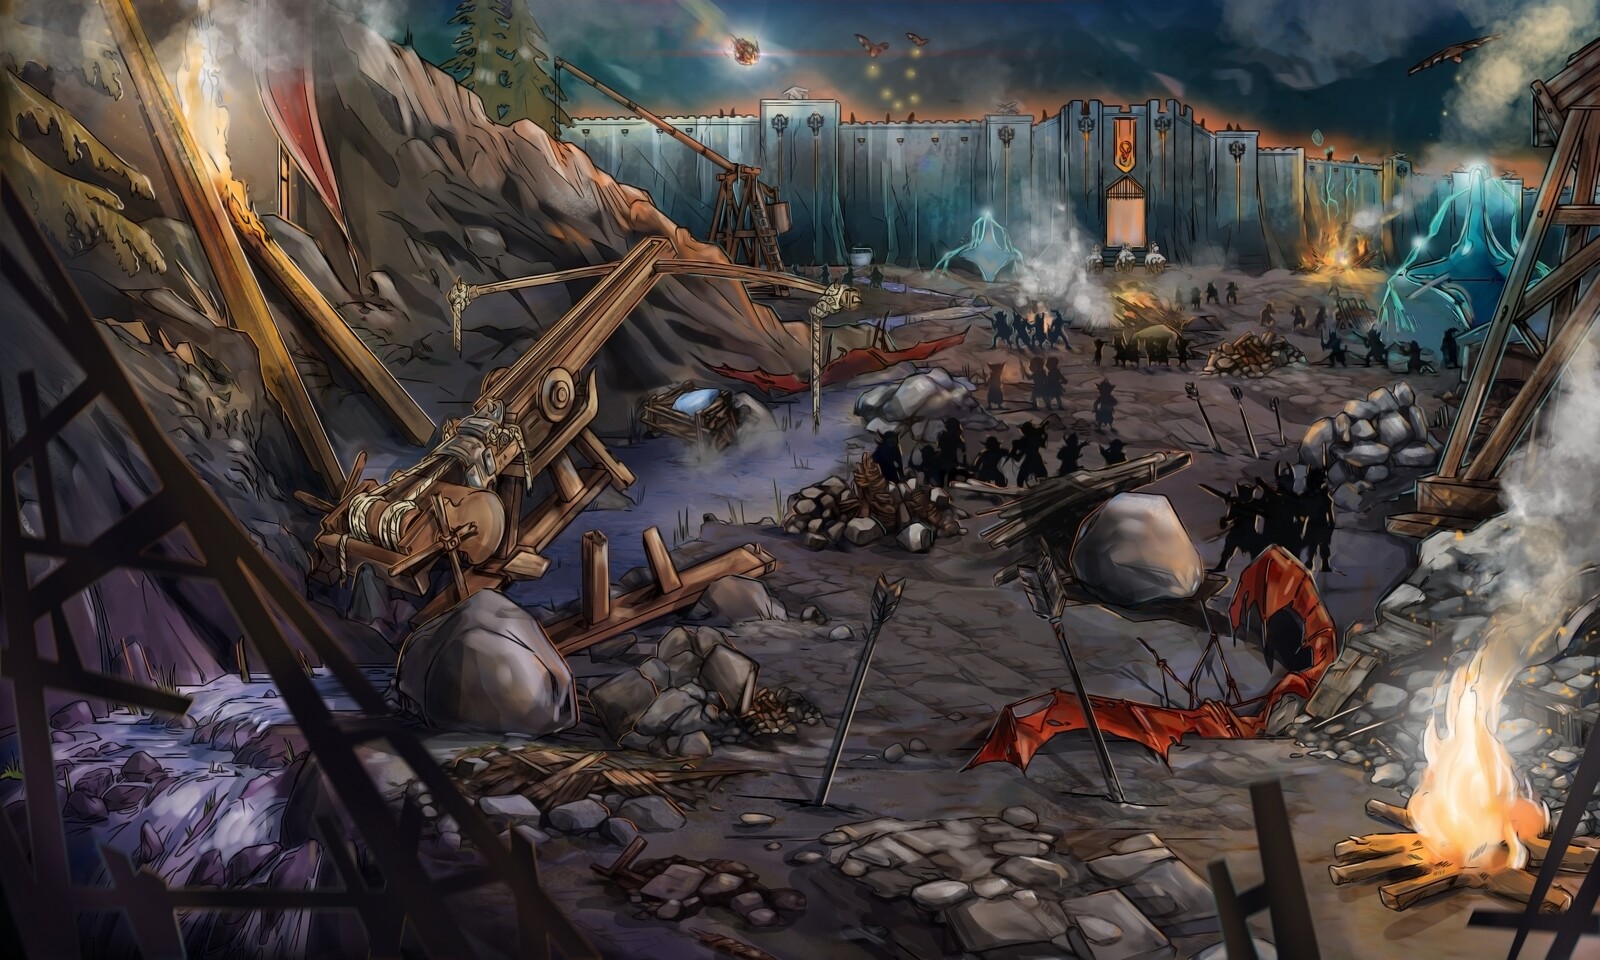 Concept Design - Goblin Battle Scene